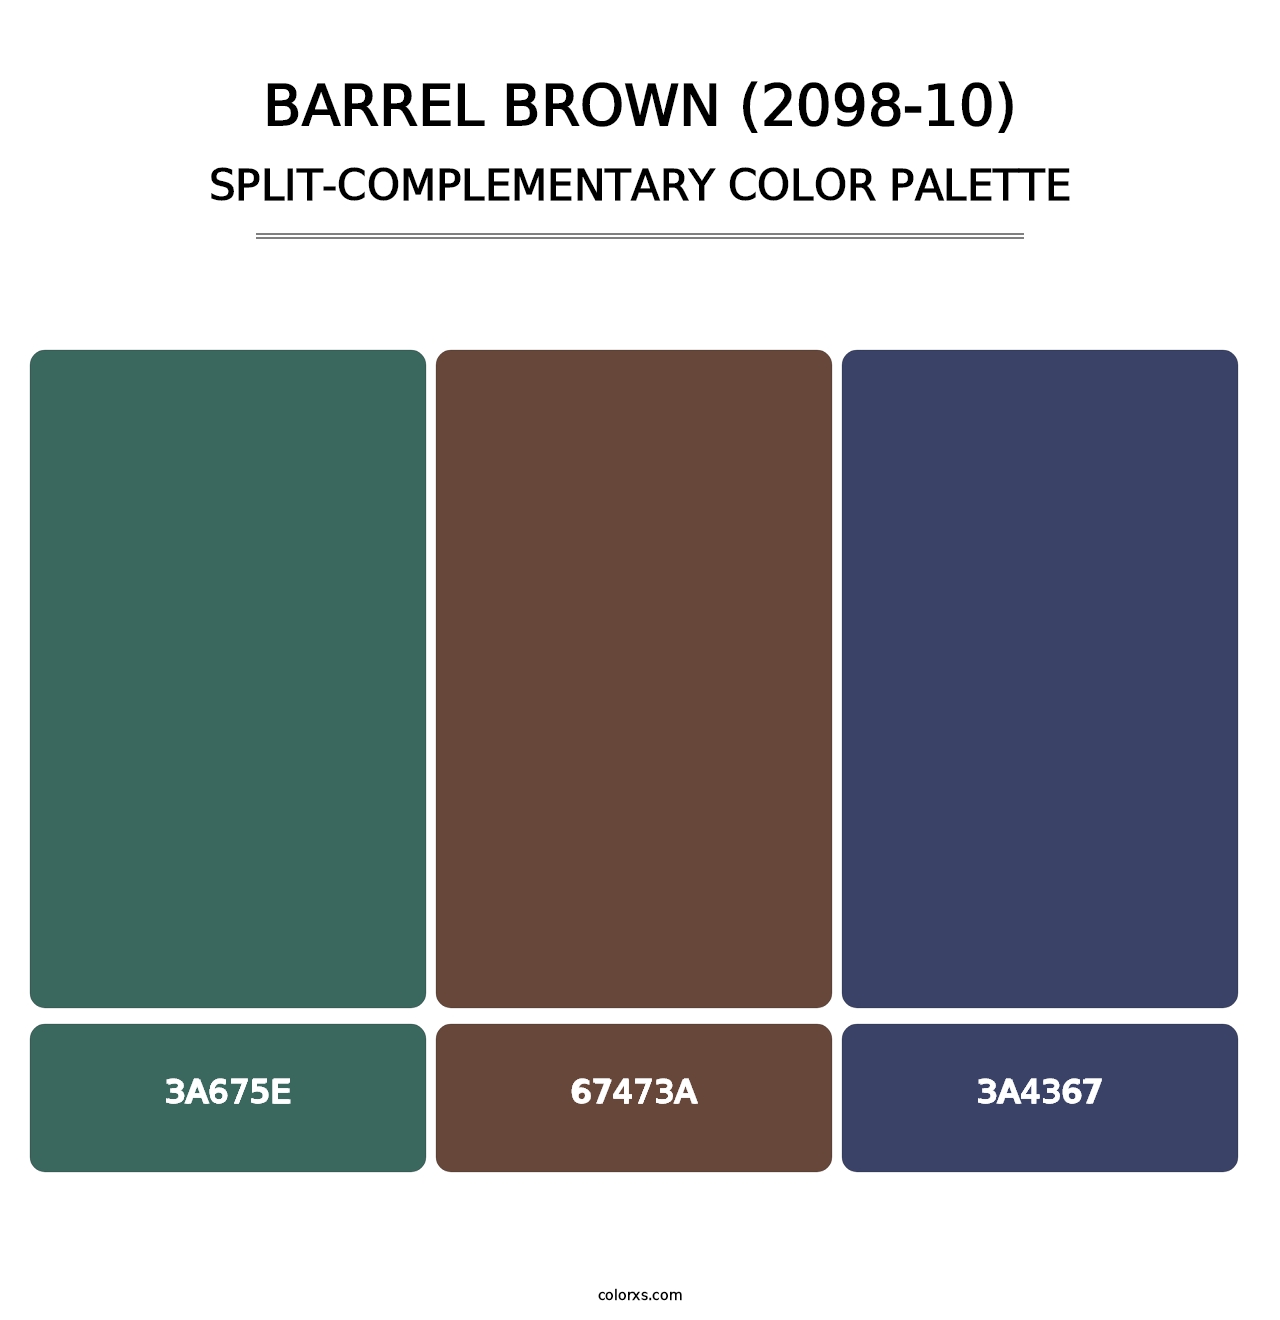 Barrel Brown (2098-10) - Split-Complementary Color Palette